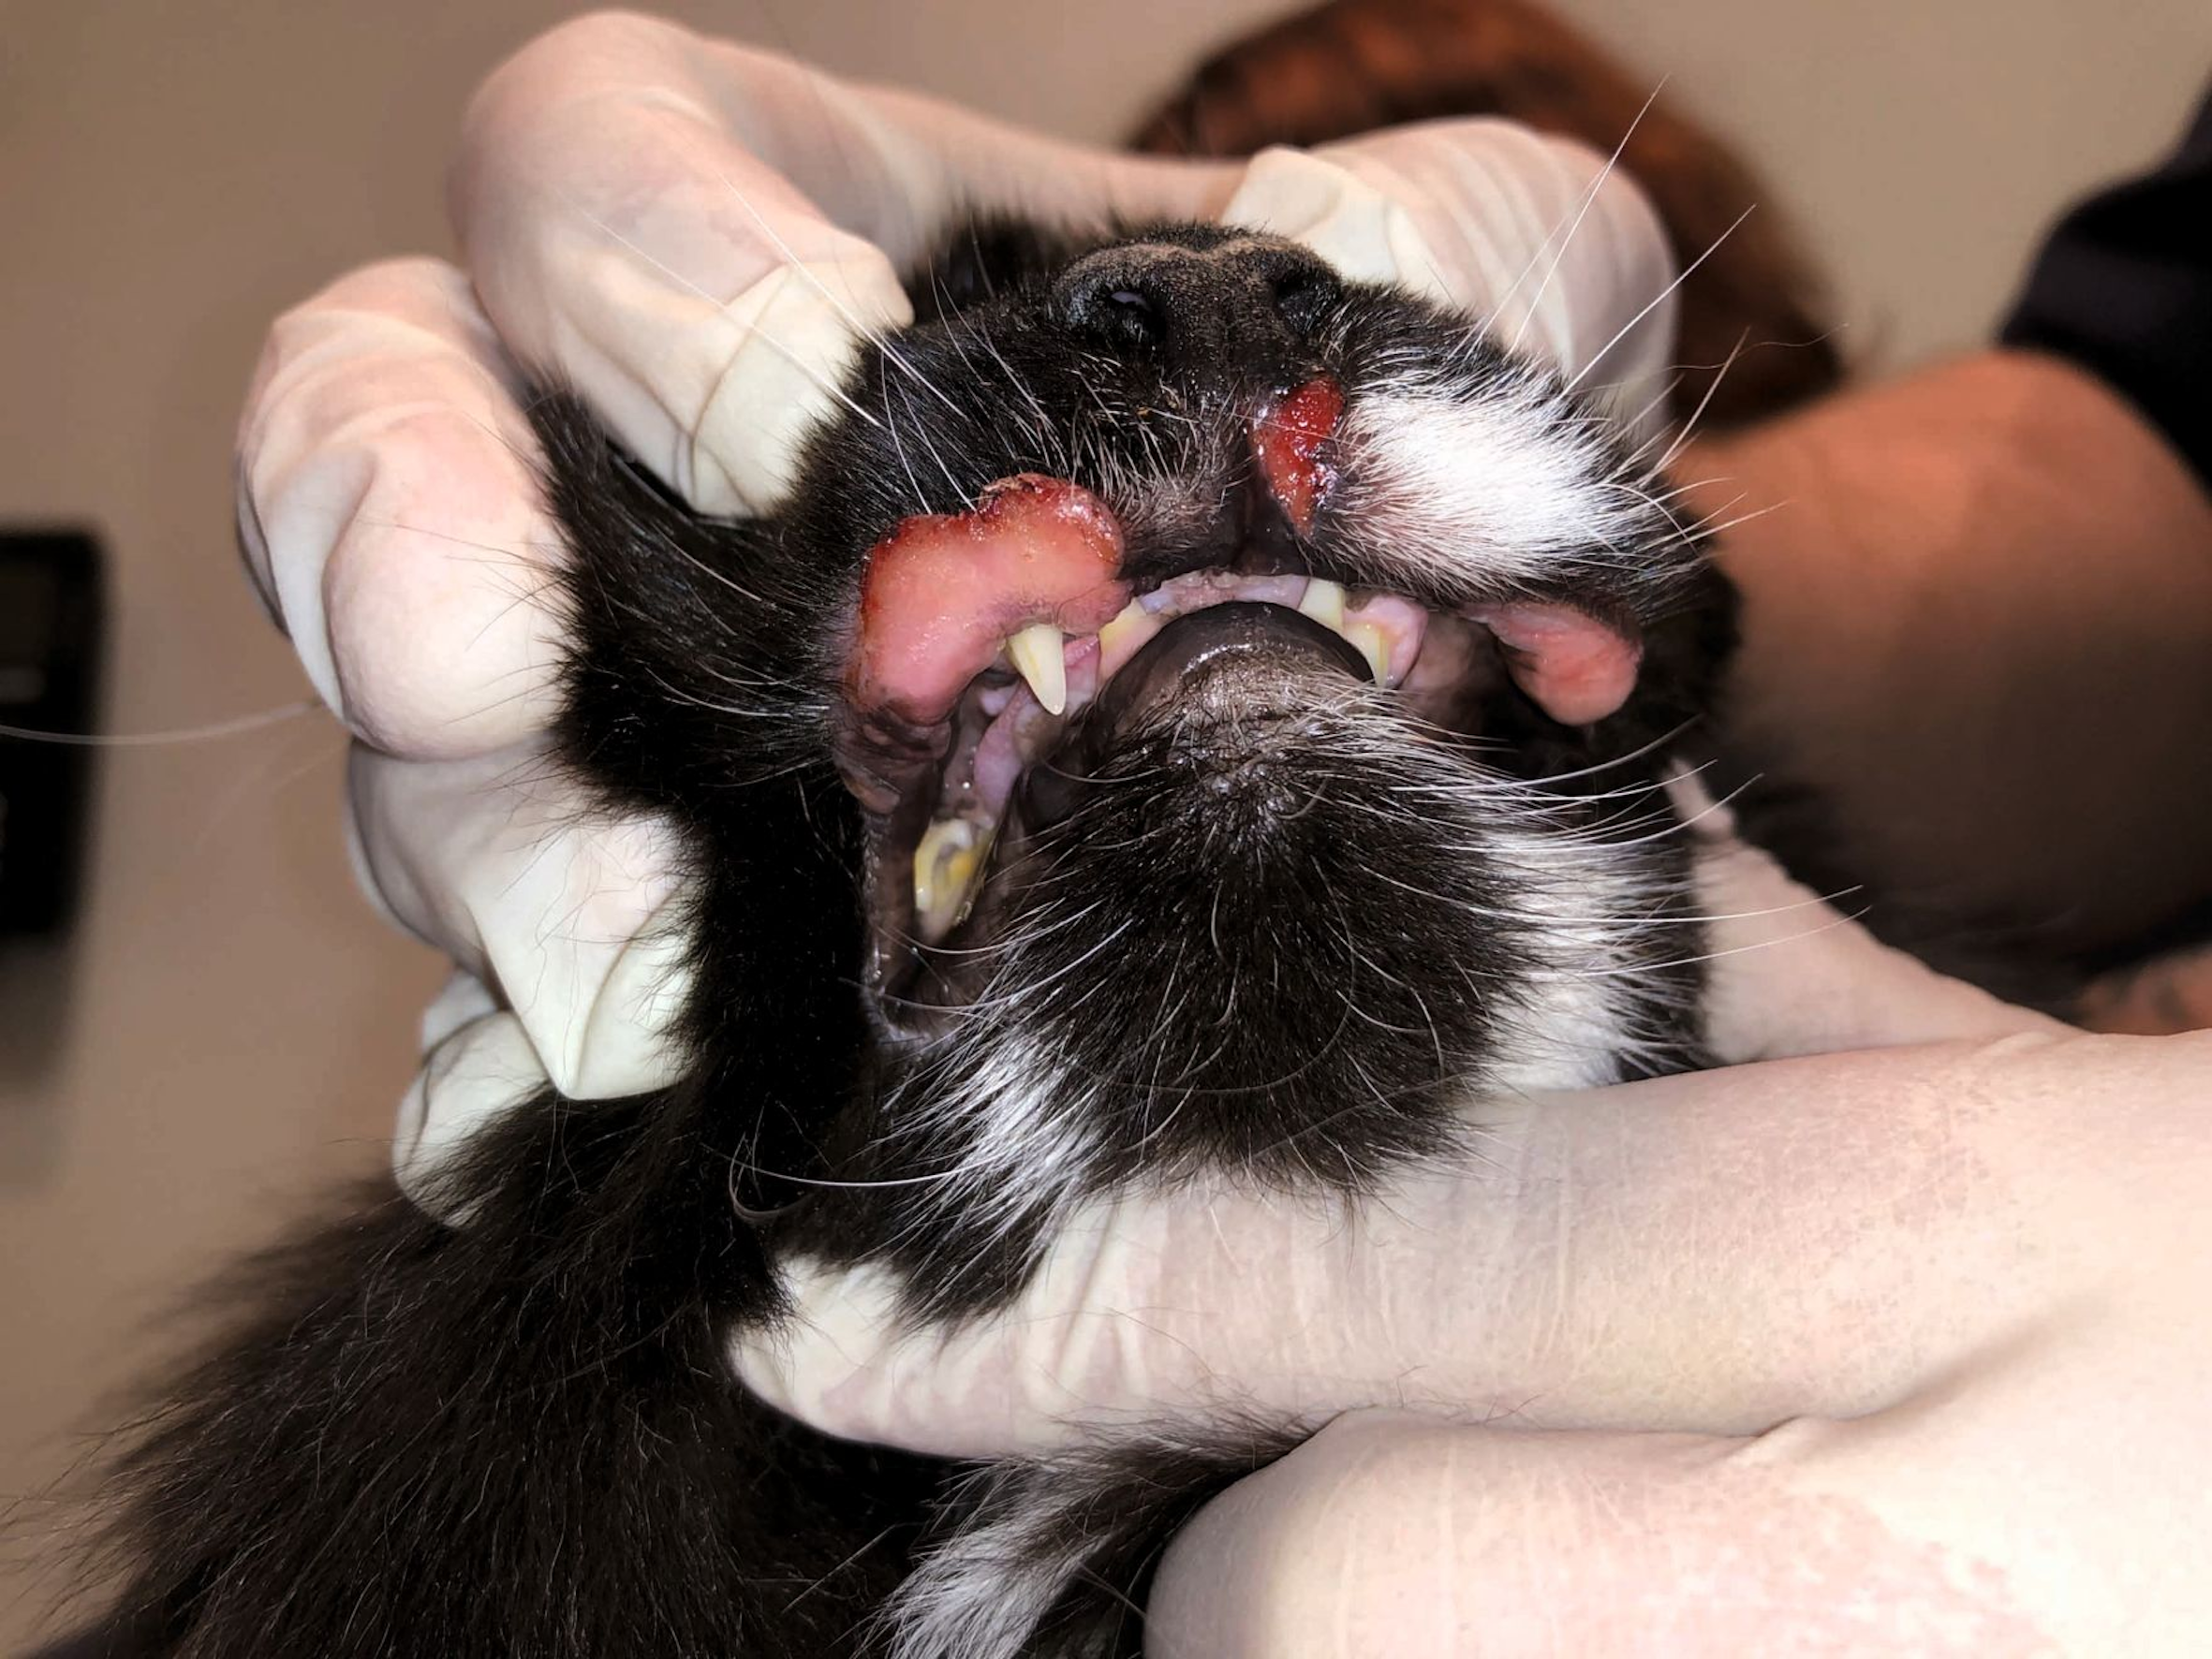 Katze mit indolenten Ulzera an der Oberlippe, ein häufiges klinisches Erscheinungsbild von Effloreszenzen im Zusammenhang mit dem eosinophilen Granulomkomplex 